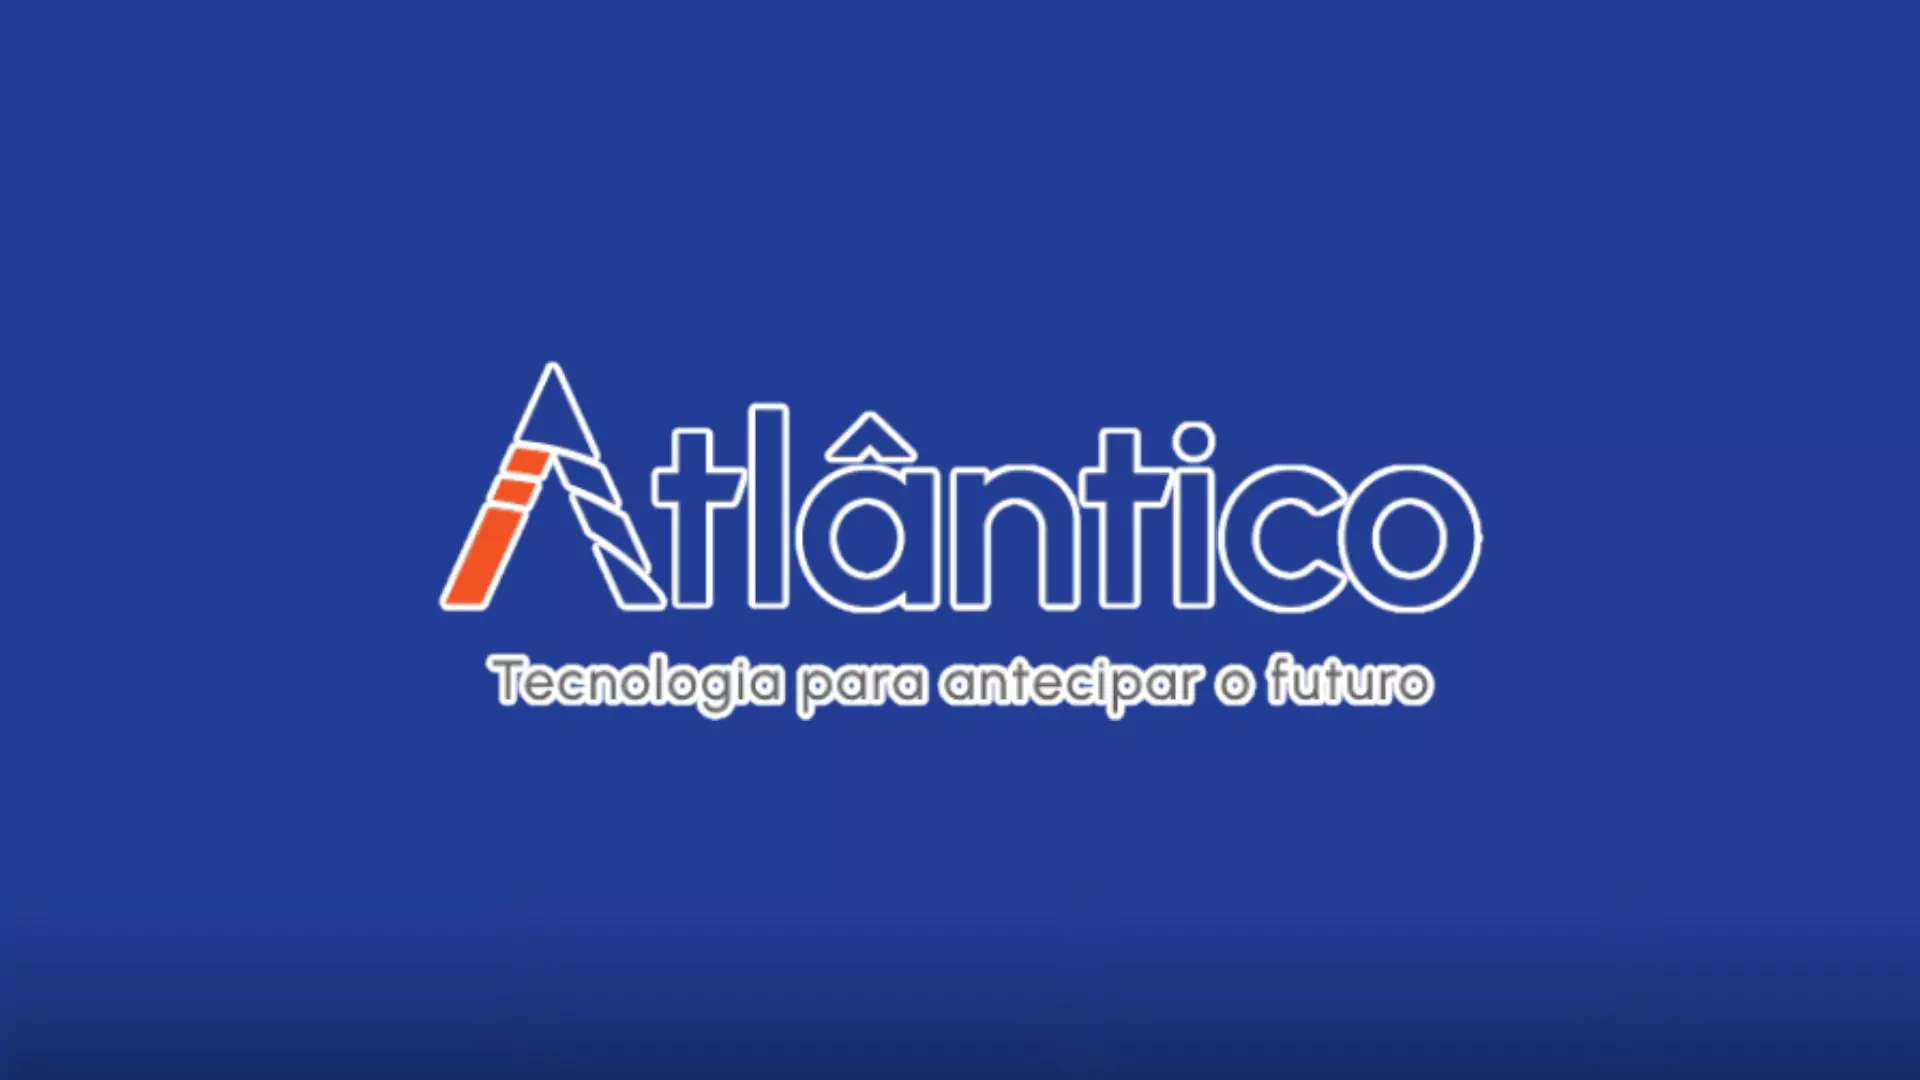 ANALISTA ADMINISTRATIVO: Vaga 100% Home Office no Instituto Atlântico